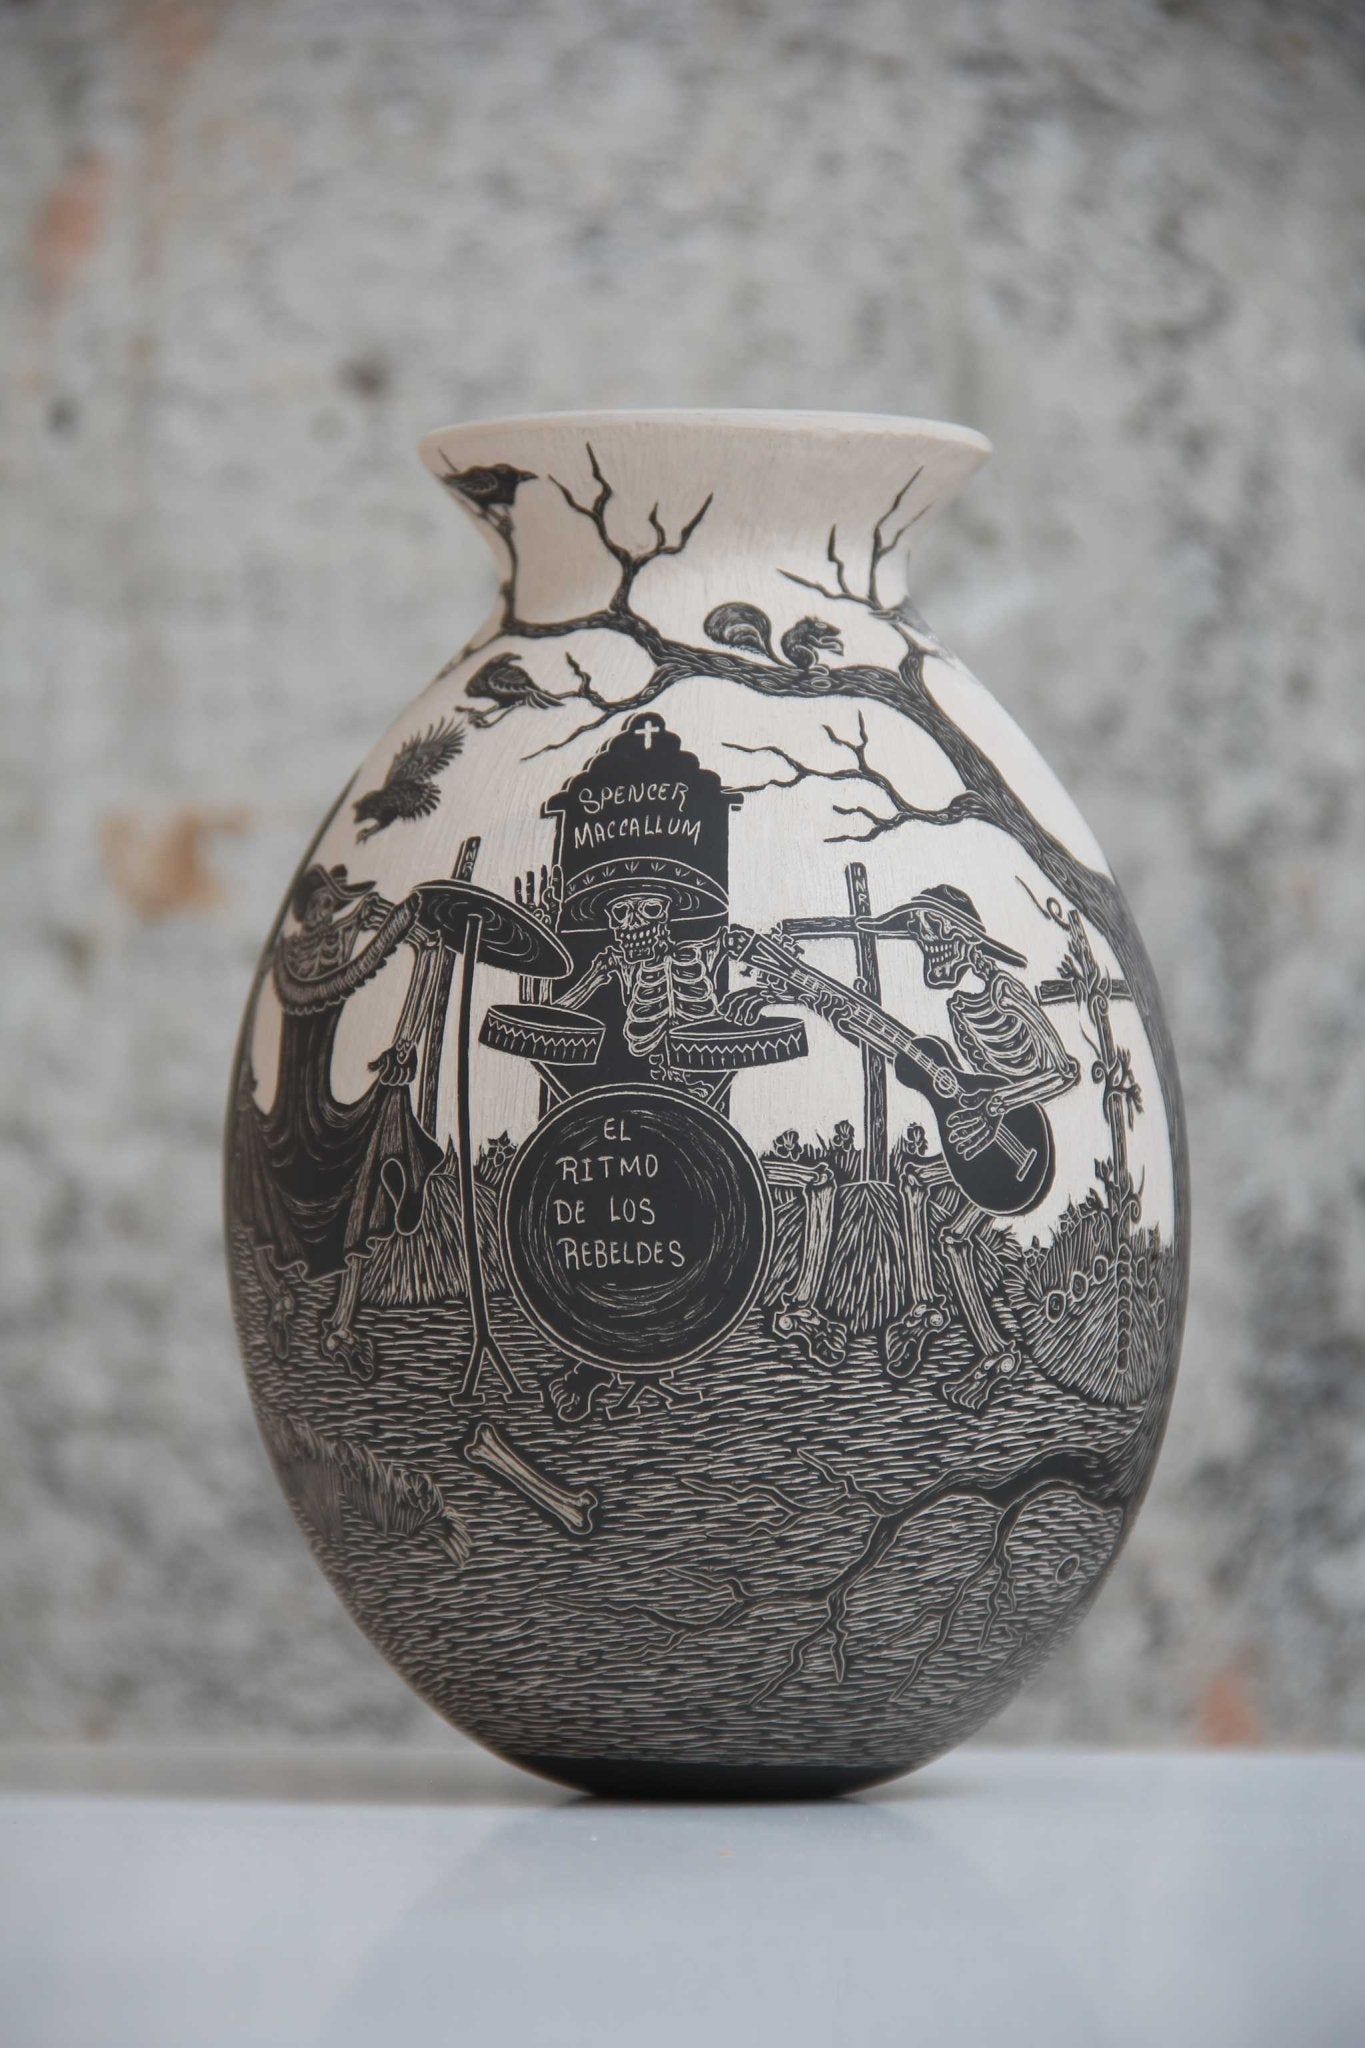 Mata Ortiz Keramik – Restless Cemetery – Tag – Huichol Art – Marakame